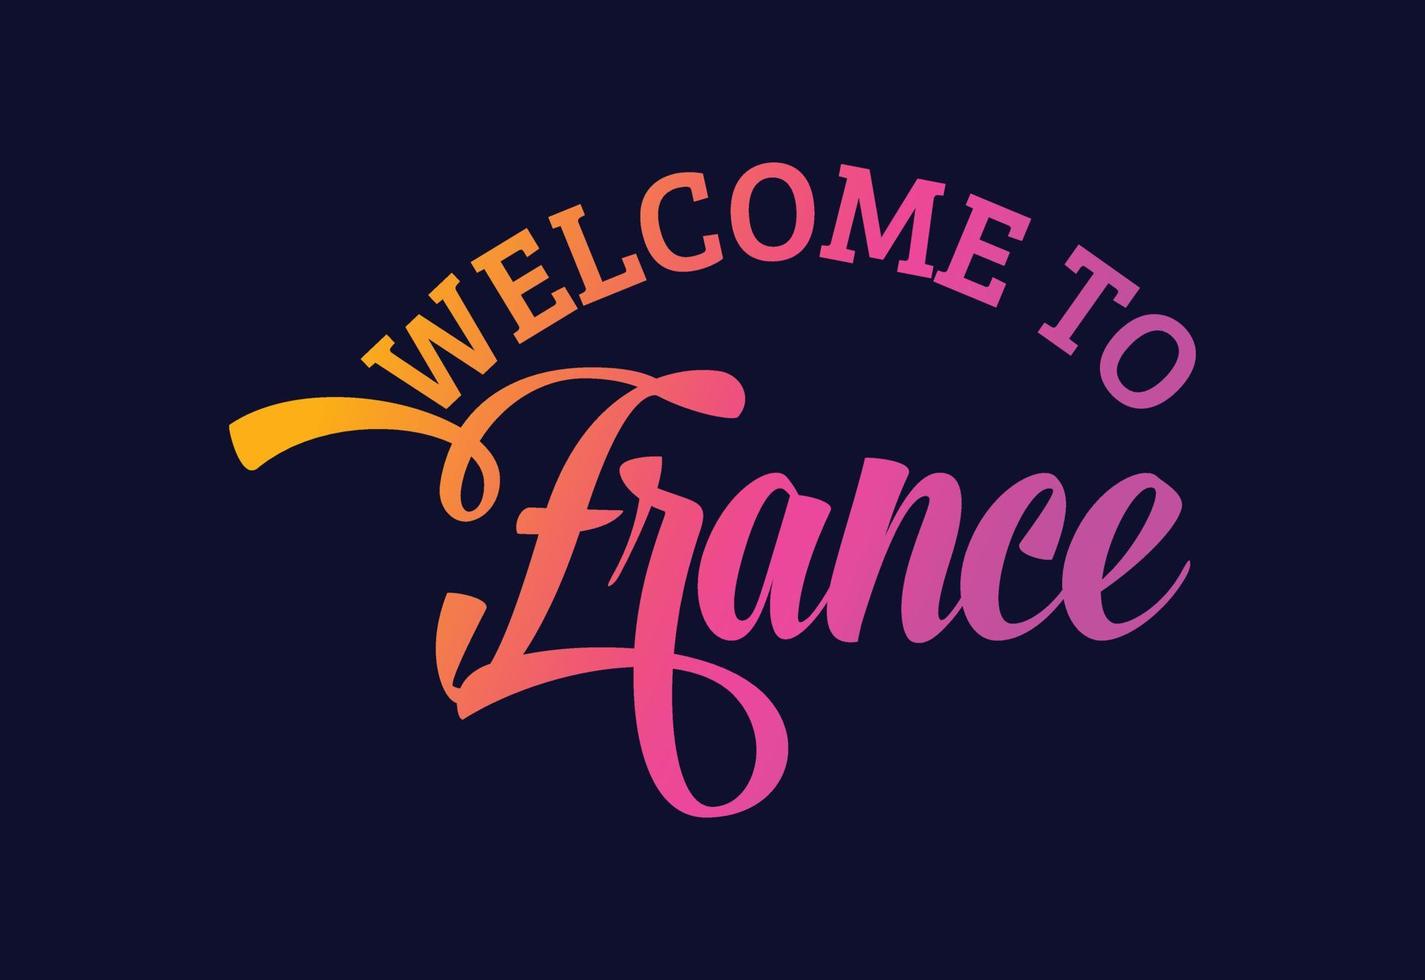 welkom in Frankrijk. word tekst creatieve lettertype ontwerp illustratie. welkom teken vector